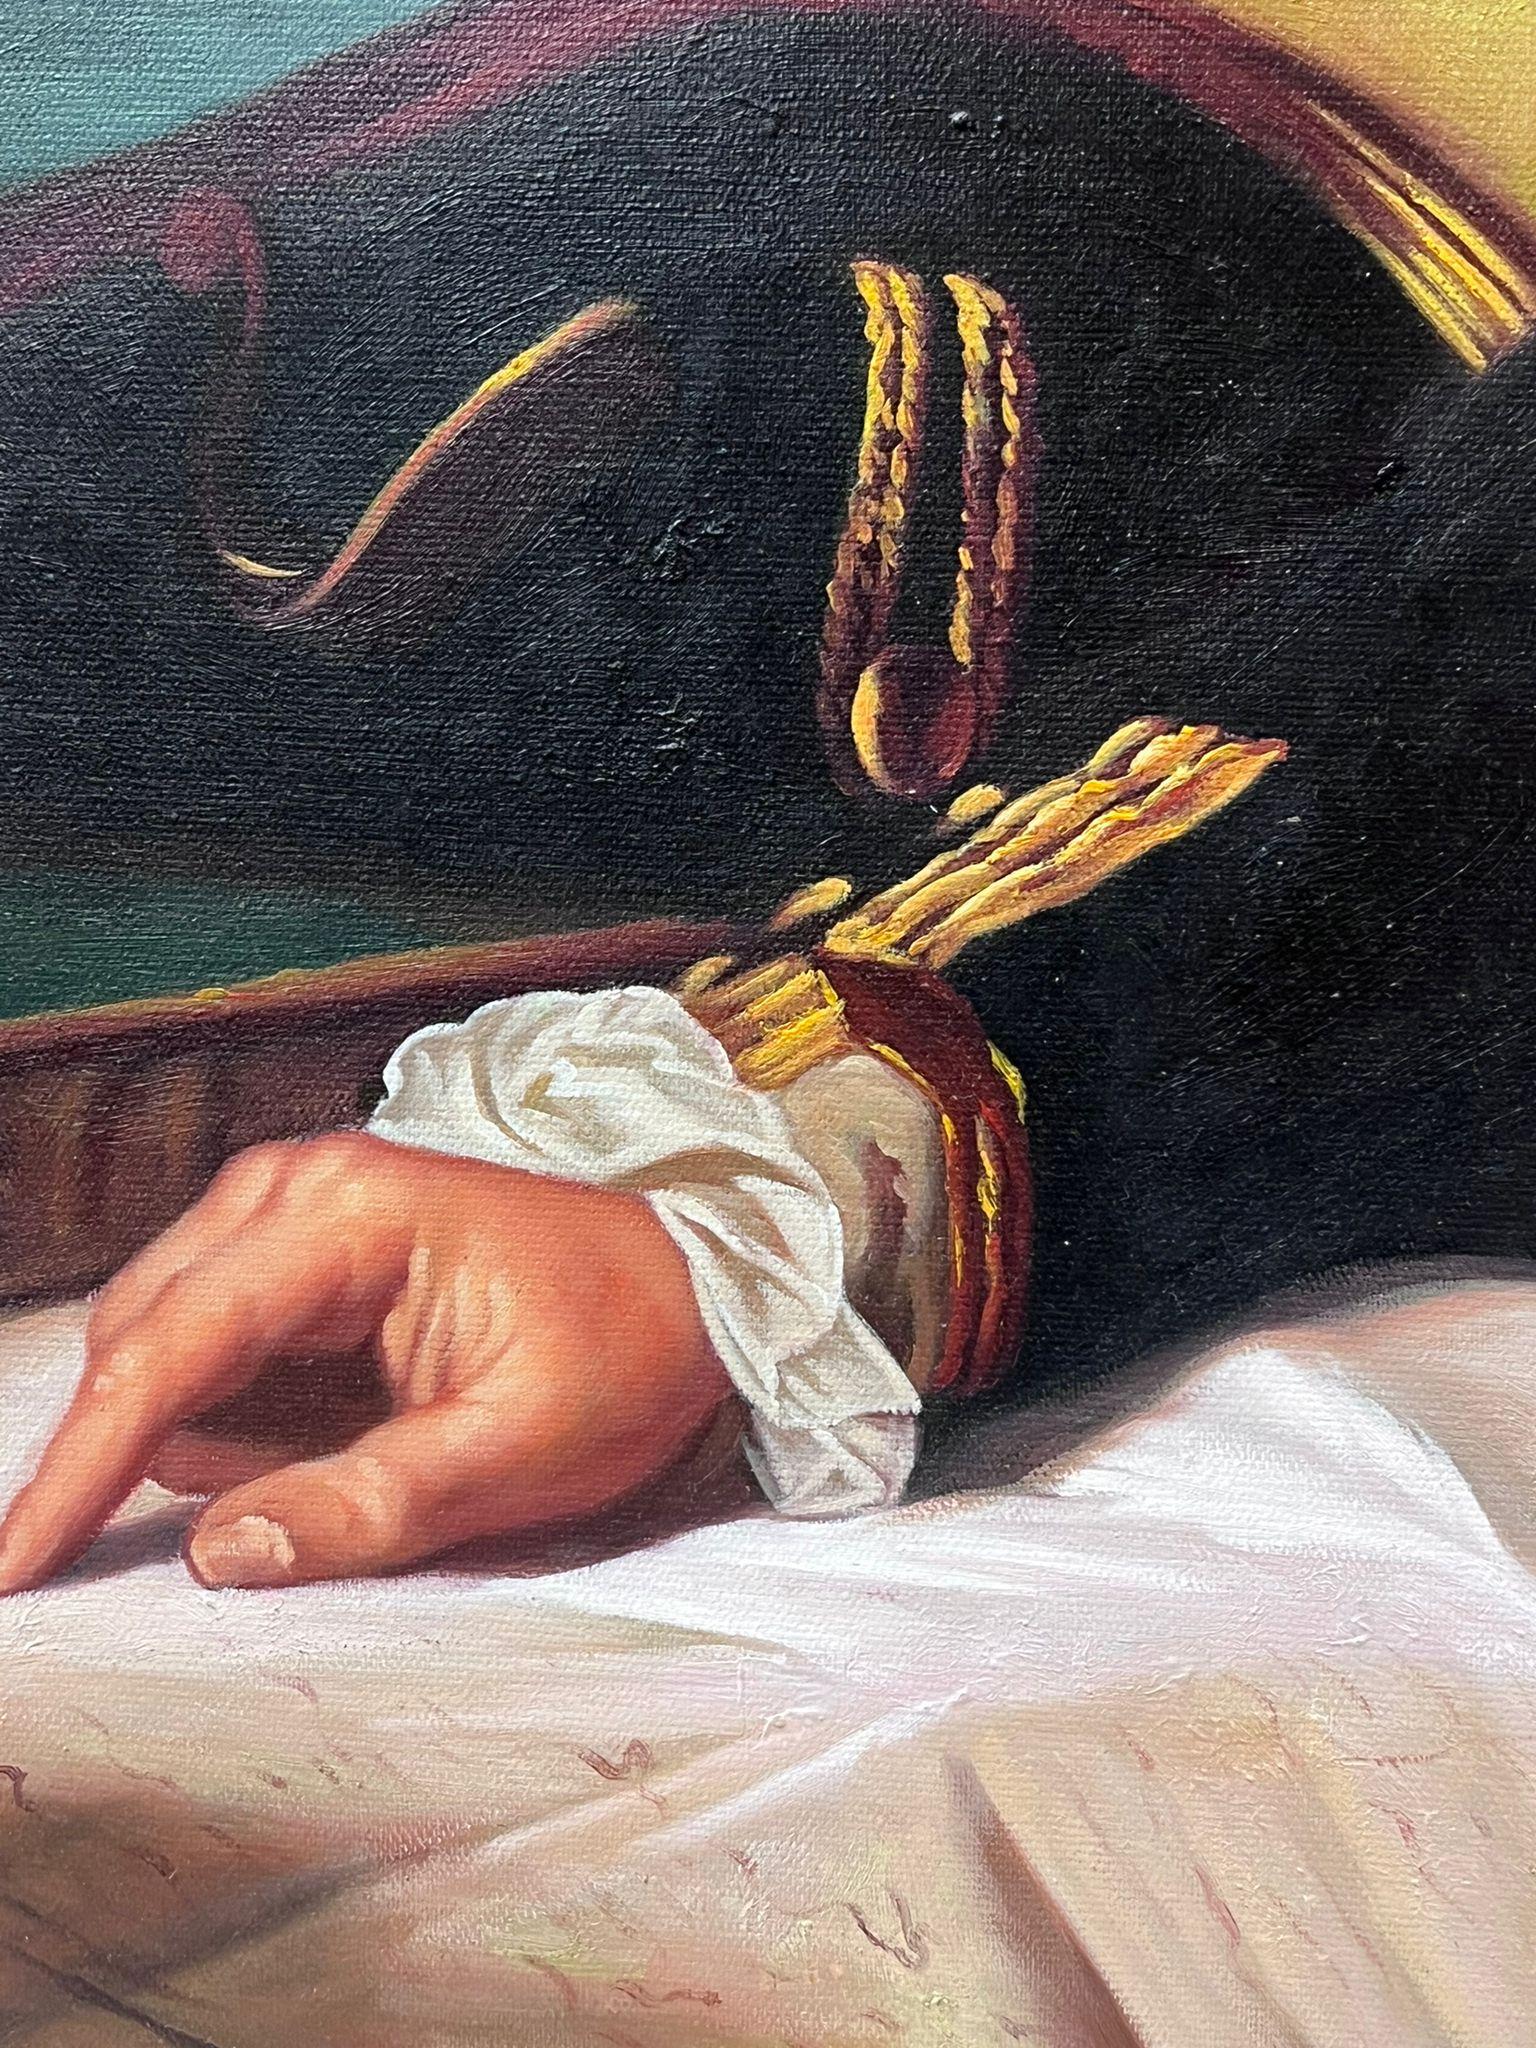 Captain James Cook Portrait Large Oil Painting on Canvas 3